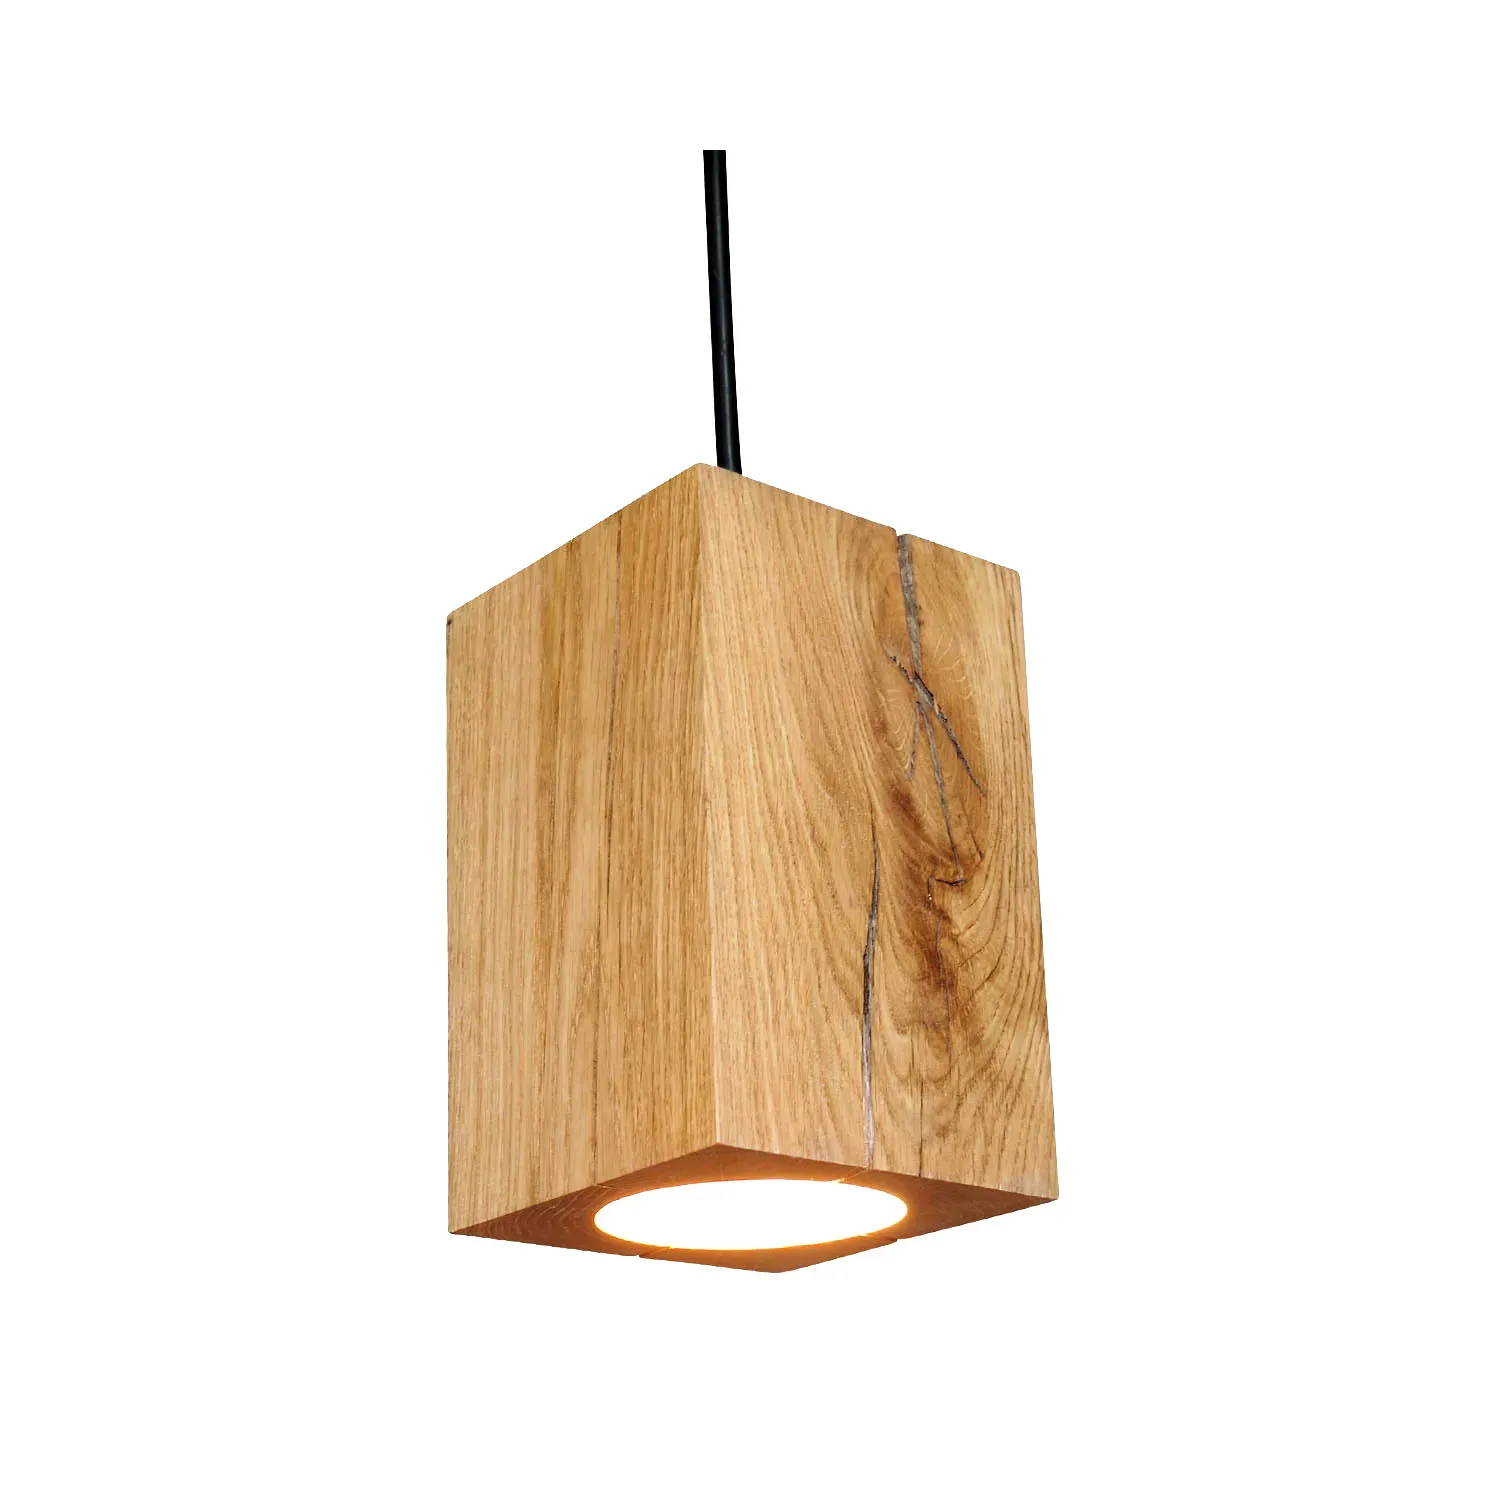 Hängelampe bestehend aus Holzblock als Lampenschirm und Fassung